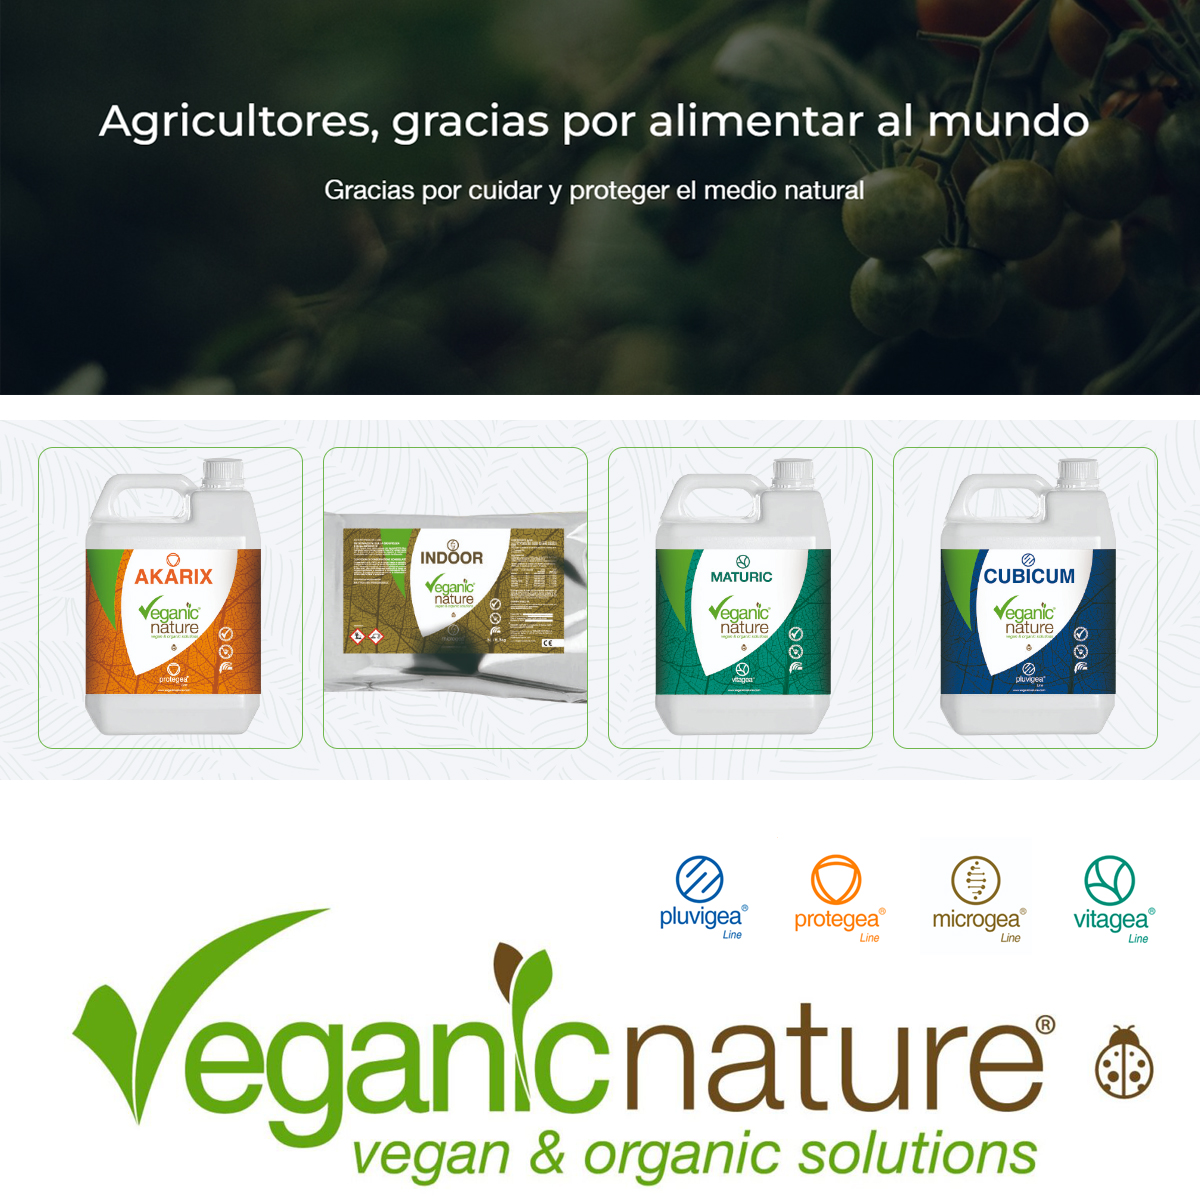 🤝 Damos la bienvenida a @Veganicnature en #VADEMECUM y #ECOVAD

🌱 VEGANIC NATURE® es una empresa española que desarrolla soluciones tecnológicas únicas procedentes de la #naturaleza para todo tipo de agricultura, incluida la #orgánica y la #biodinámica

bit.ly/4deHwWq